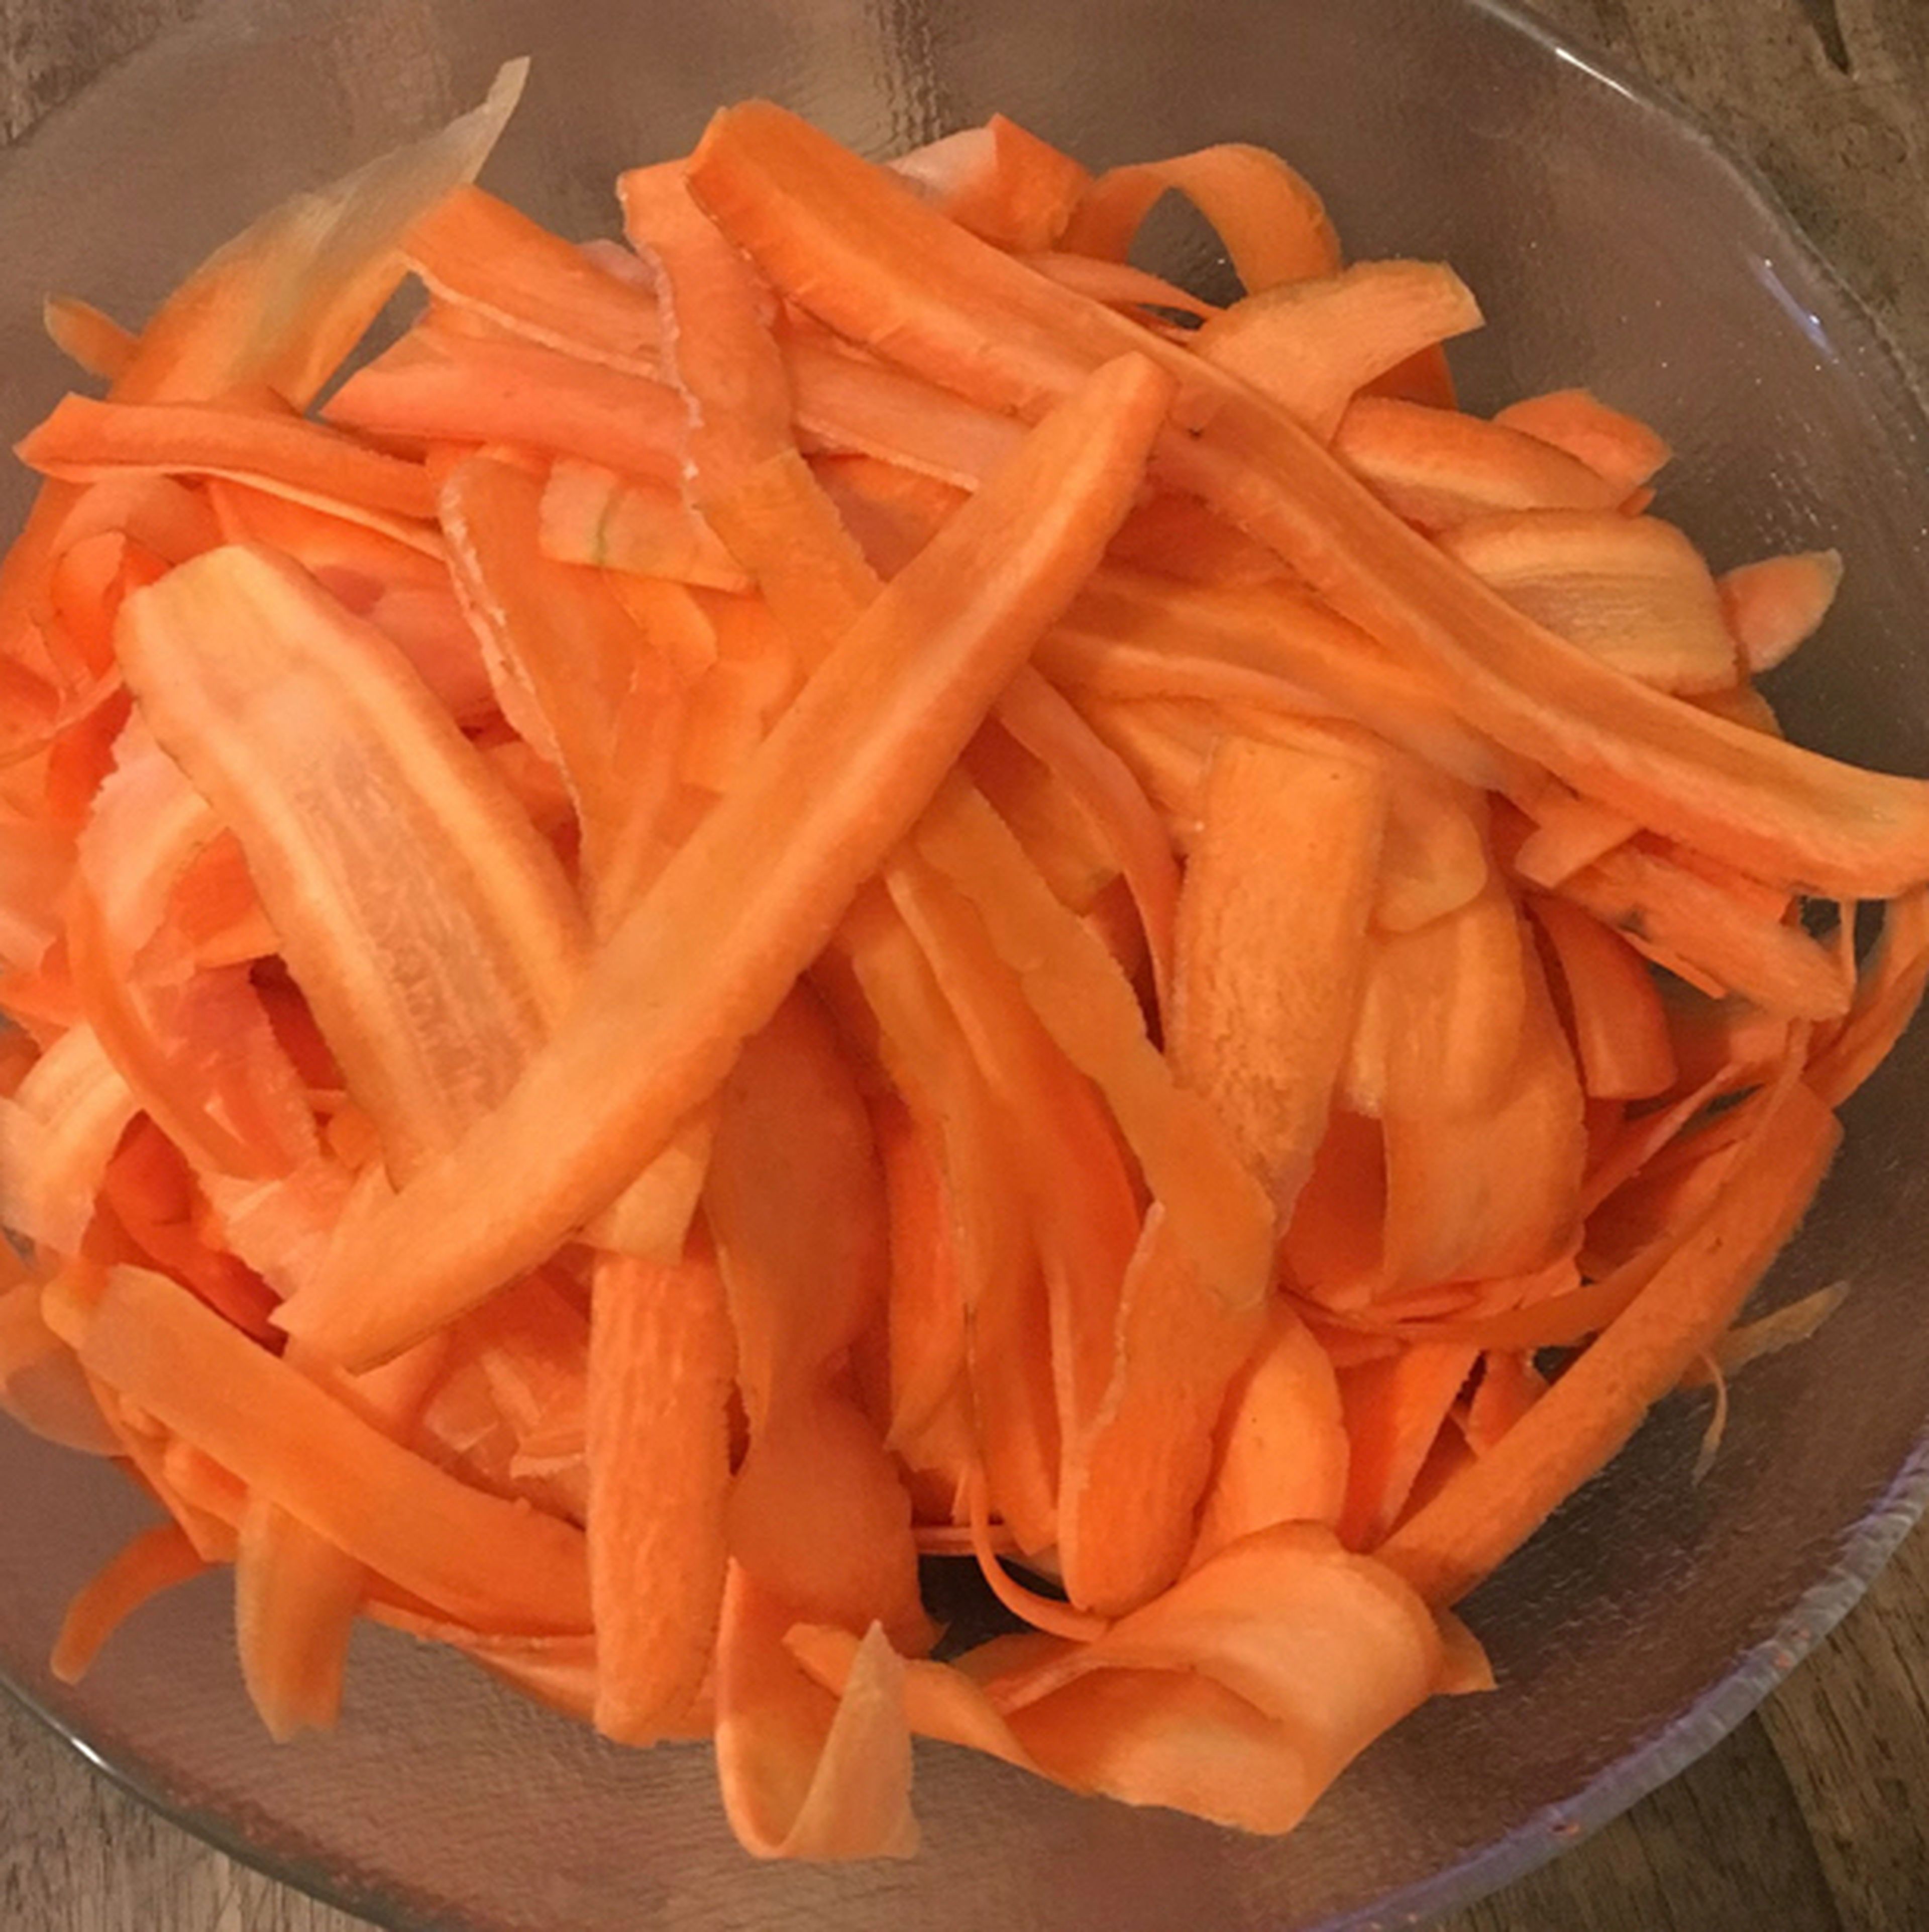 Zuerst Karotten schälen sowie die Enden abschneiden. Danach die Karotten längs in Scheiben „schälen“, sodass die Karotten alle gleich dünn und circa gleich lang sind.